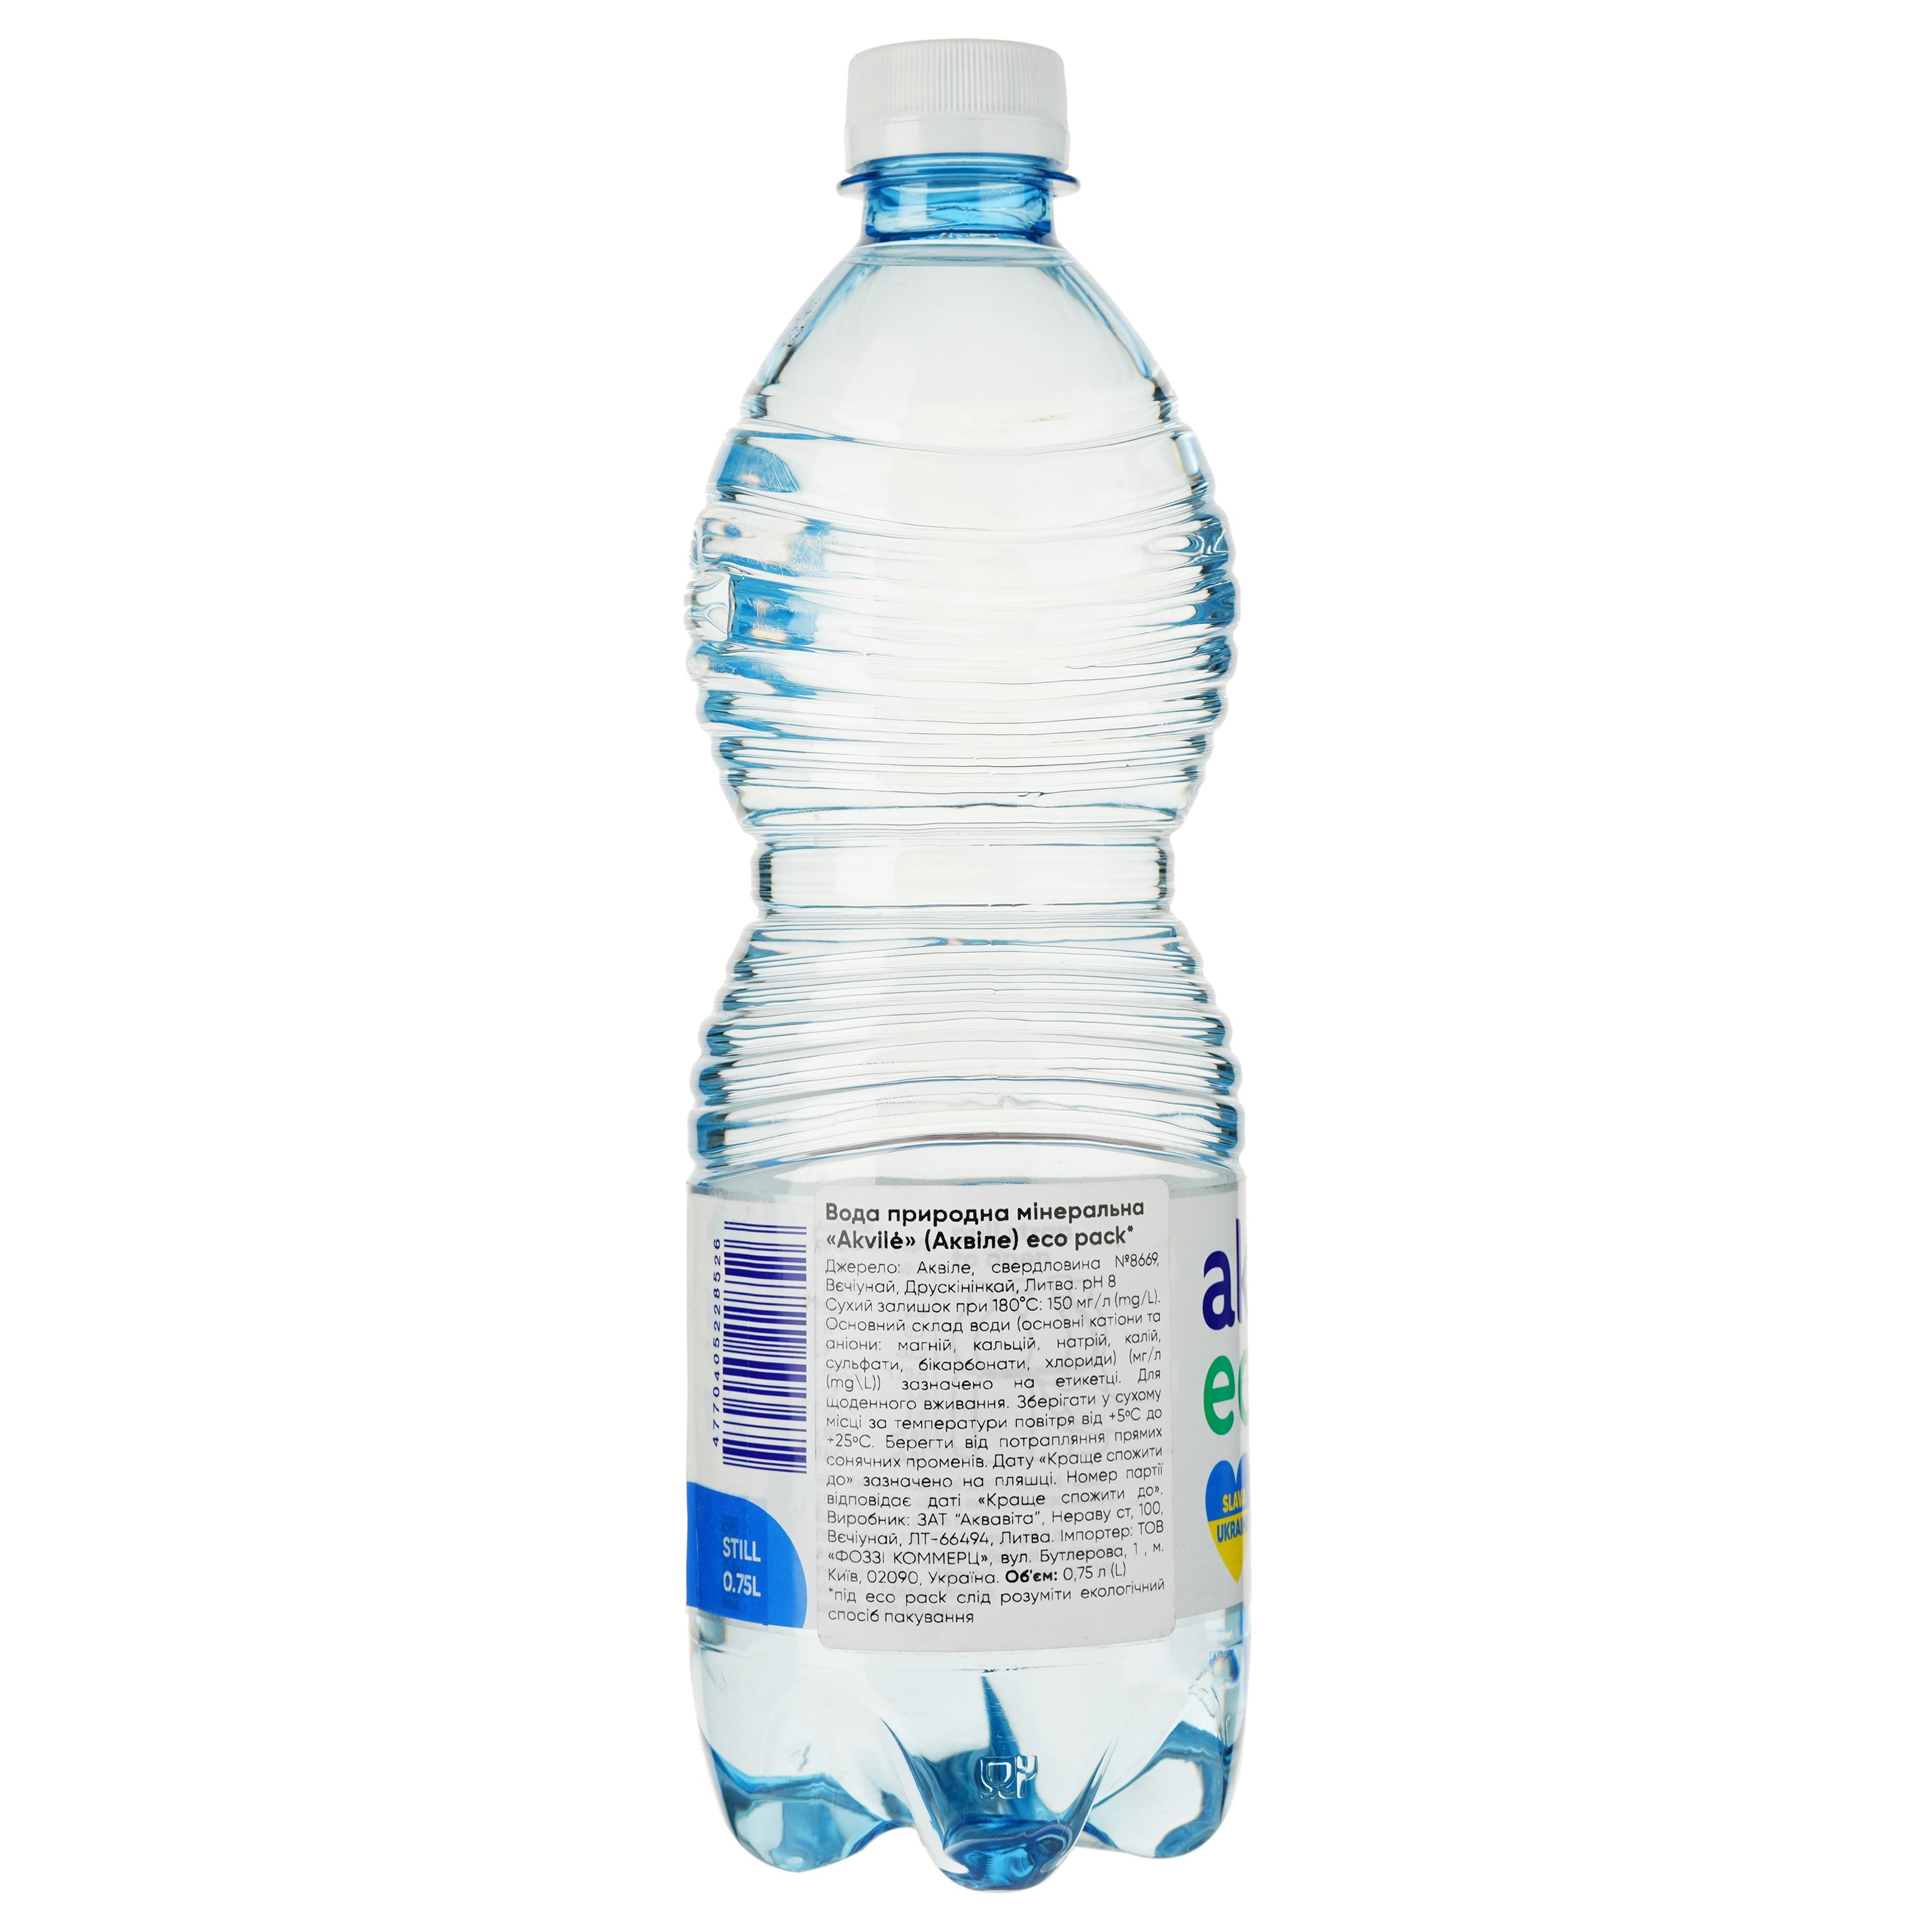 Вода минеральная Akvile негазированная Eco pack 0.75 л - фото 2